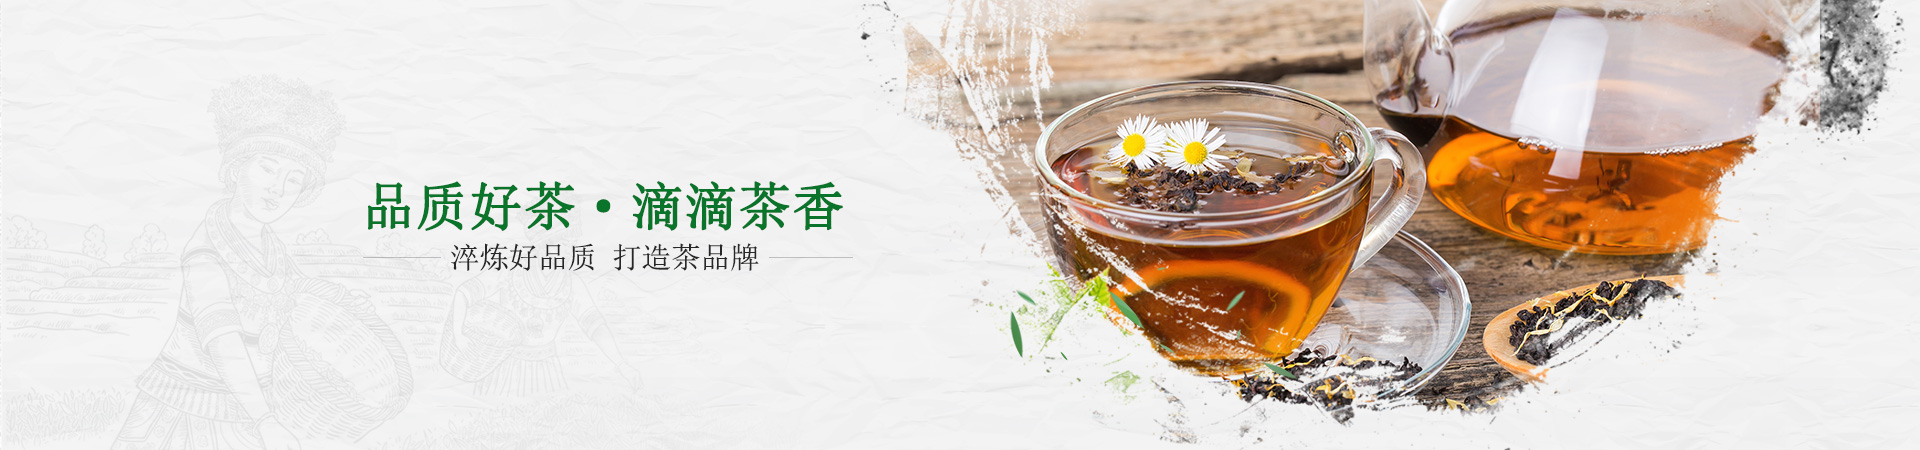 纳福礼-品质好茶·滴滴茶香        淬炼好品质 打造茶品牌